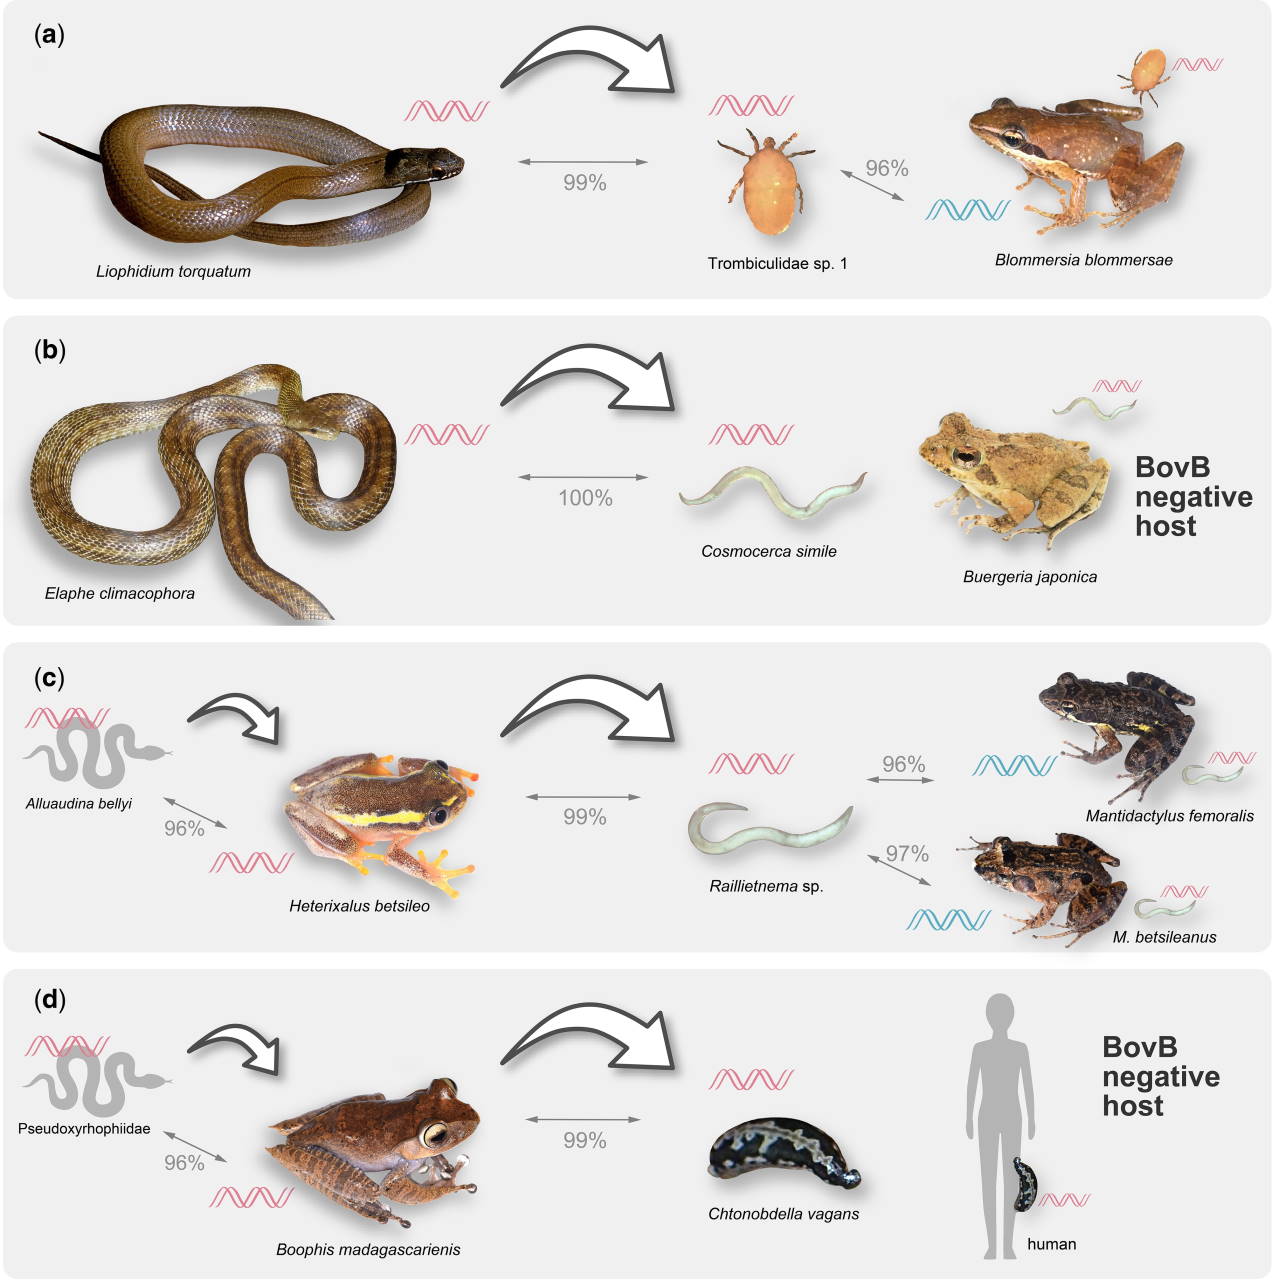 Можливі шляхи передачі зміїного BovB за допомогою паразитів. Товсті стрілки вказують напрямок горизонтального перенесення, а тонкі - подібність послідовностей&amp;nbsp;BovB у представників різних таксонів.&amp;nbsp;Chiaki Kambayashi et al. /&amp;nbsp;Molecular Biology and Evolution, 2022